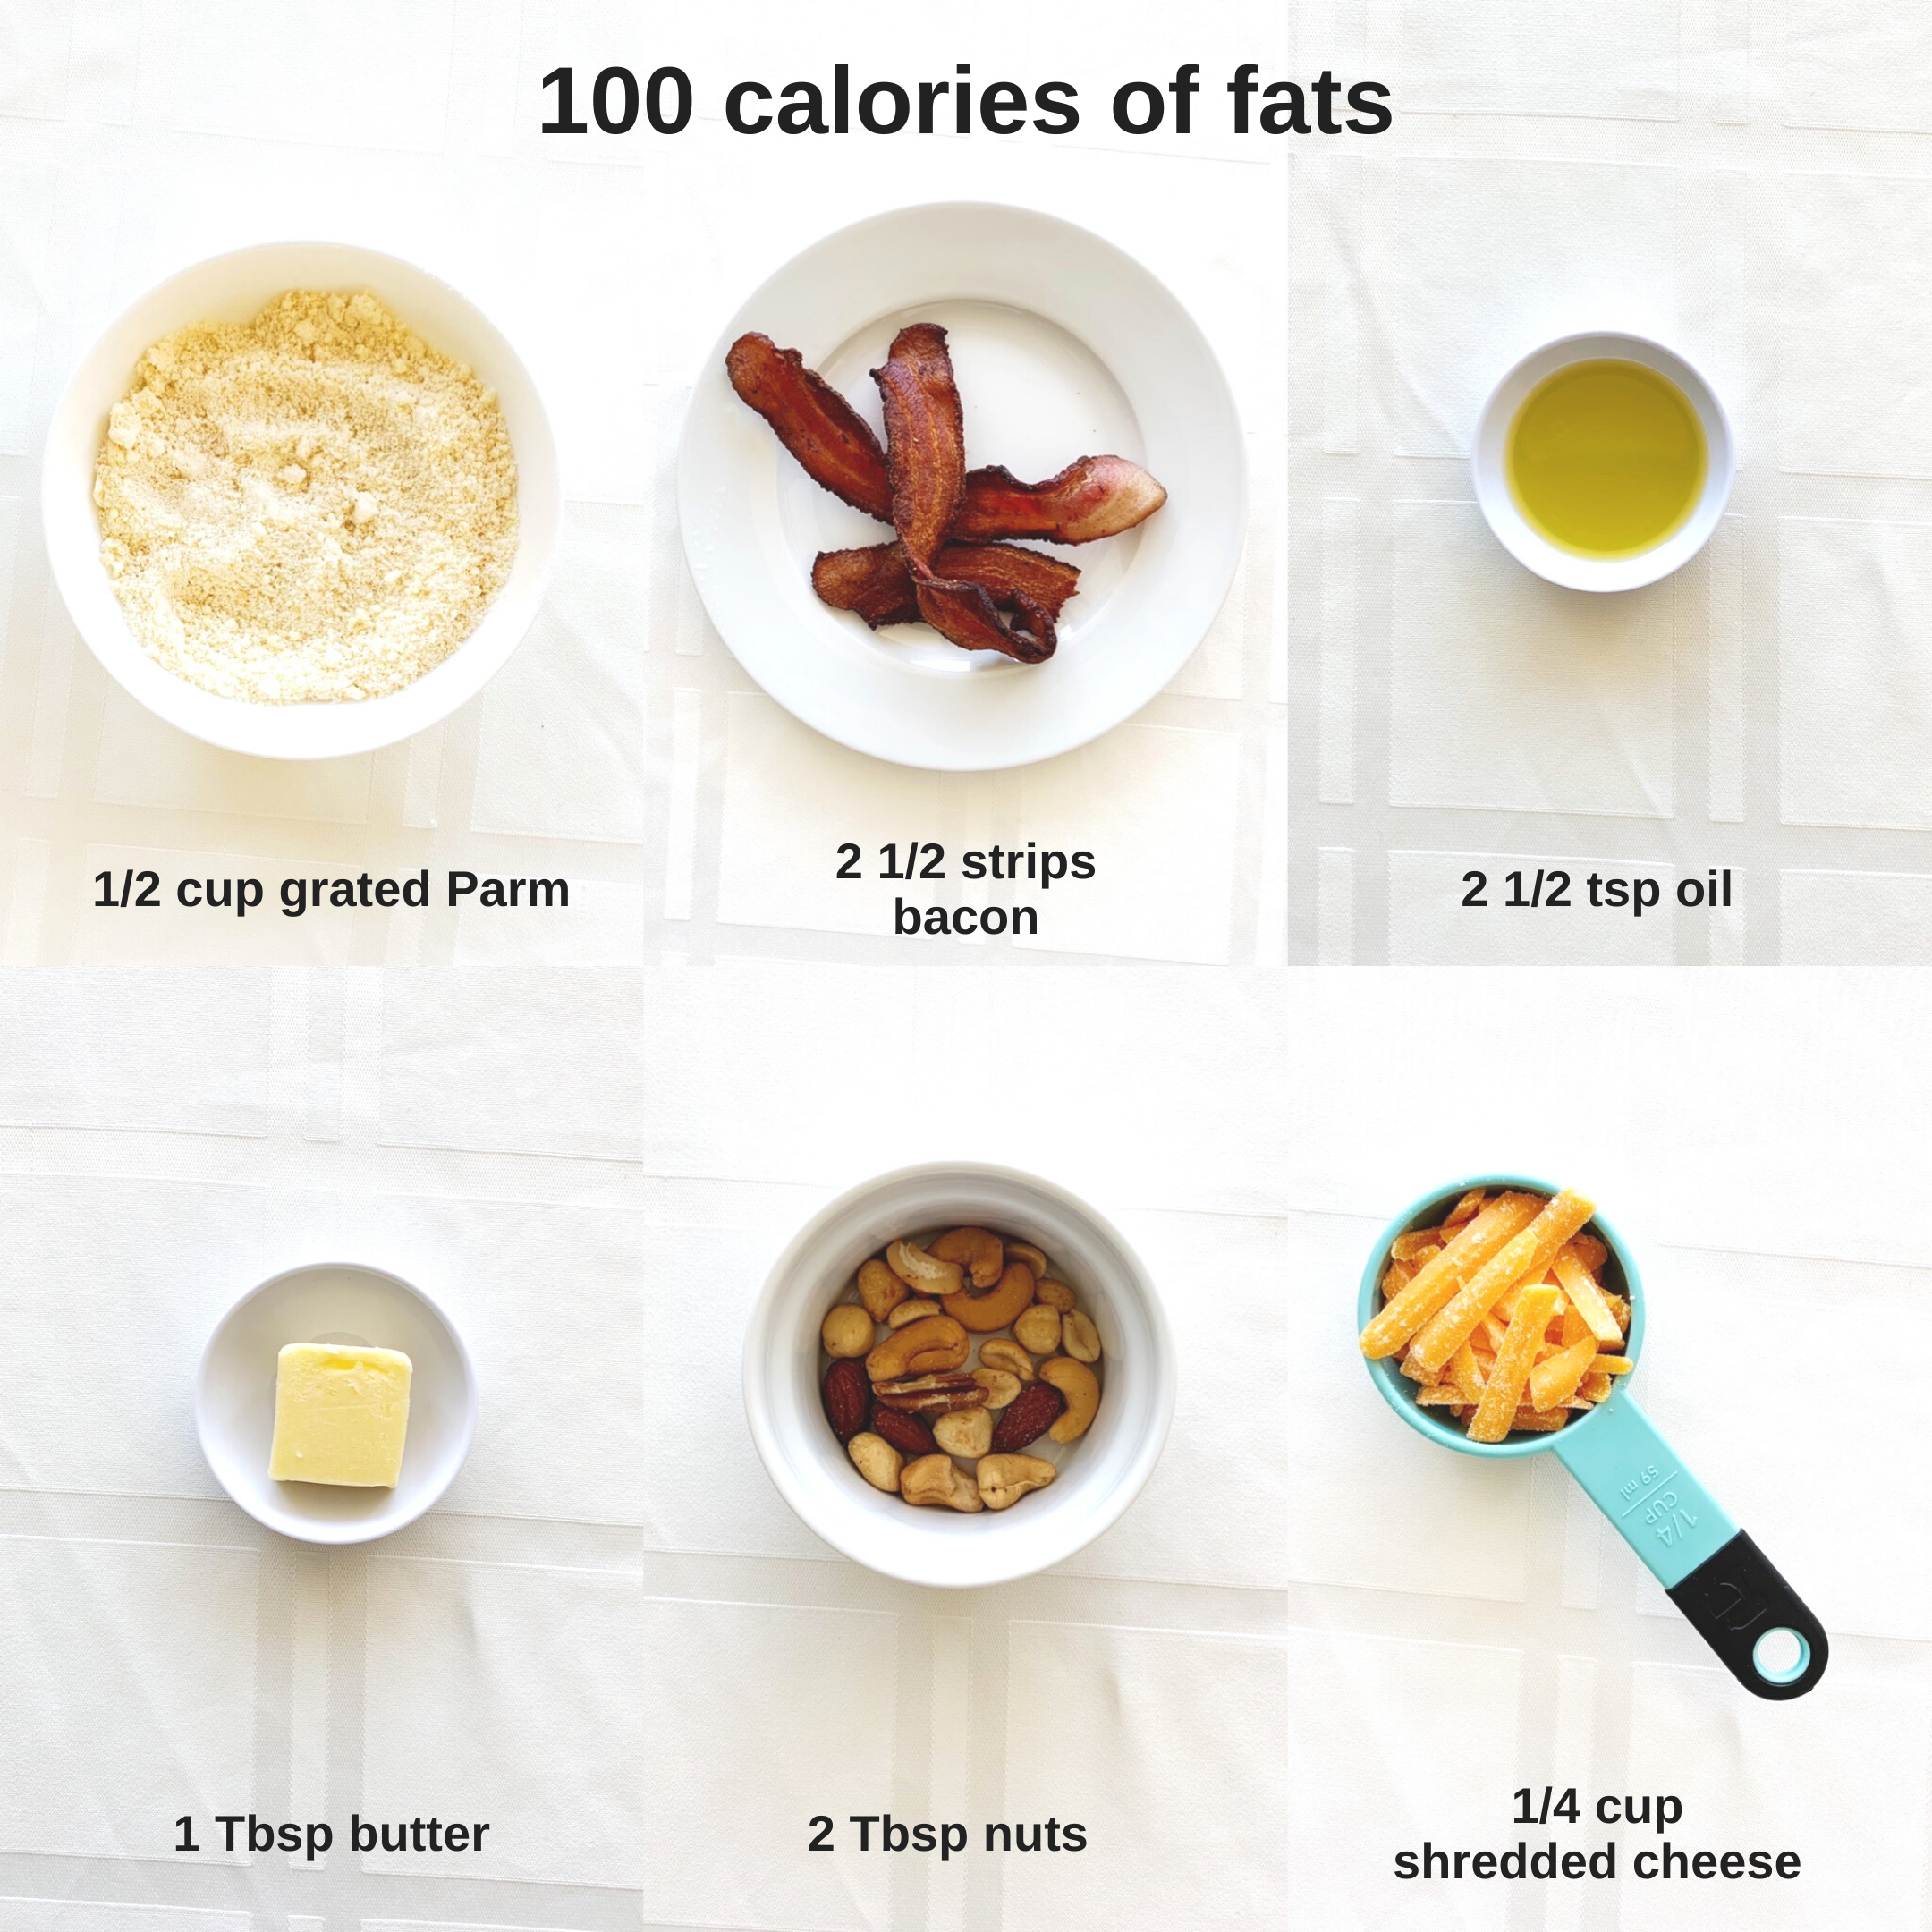 fats+100+calories+college+nutritionist+rachel+paul